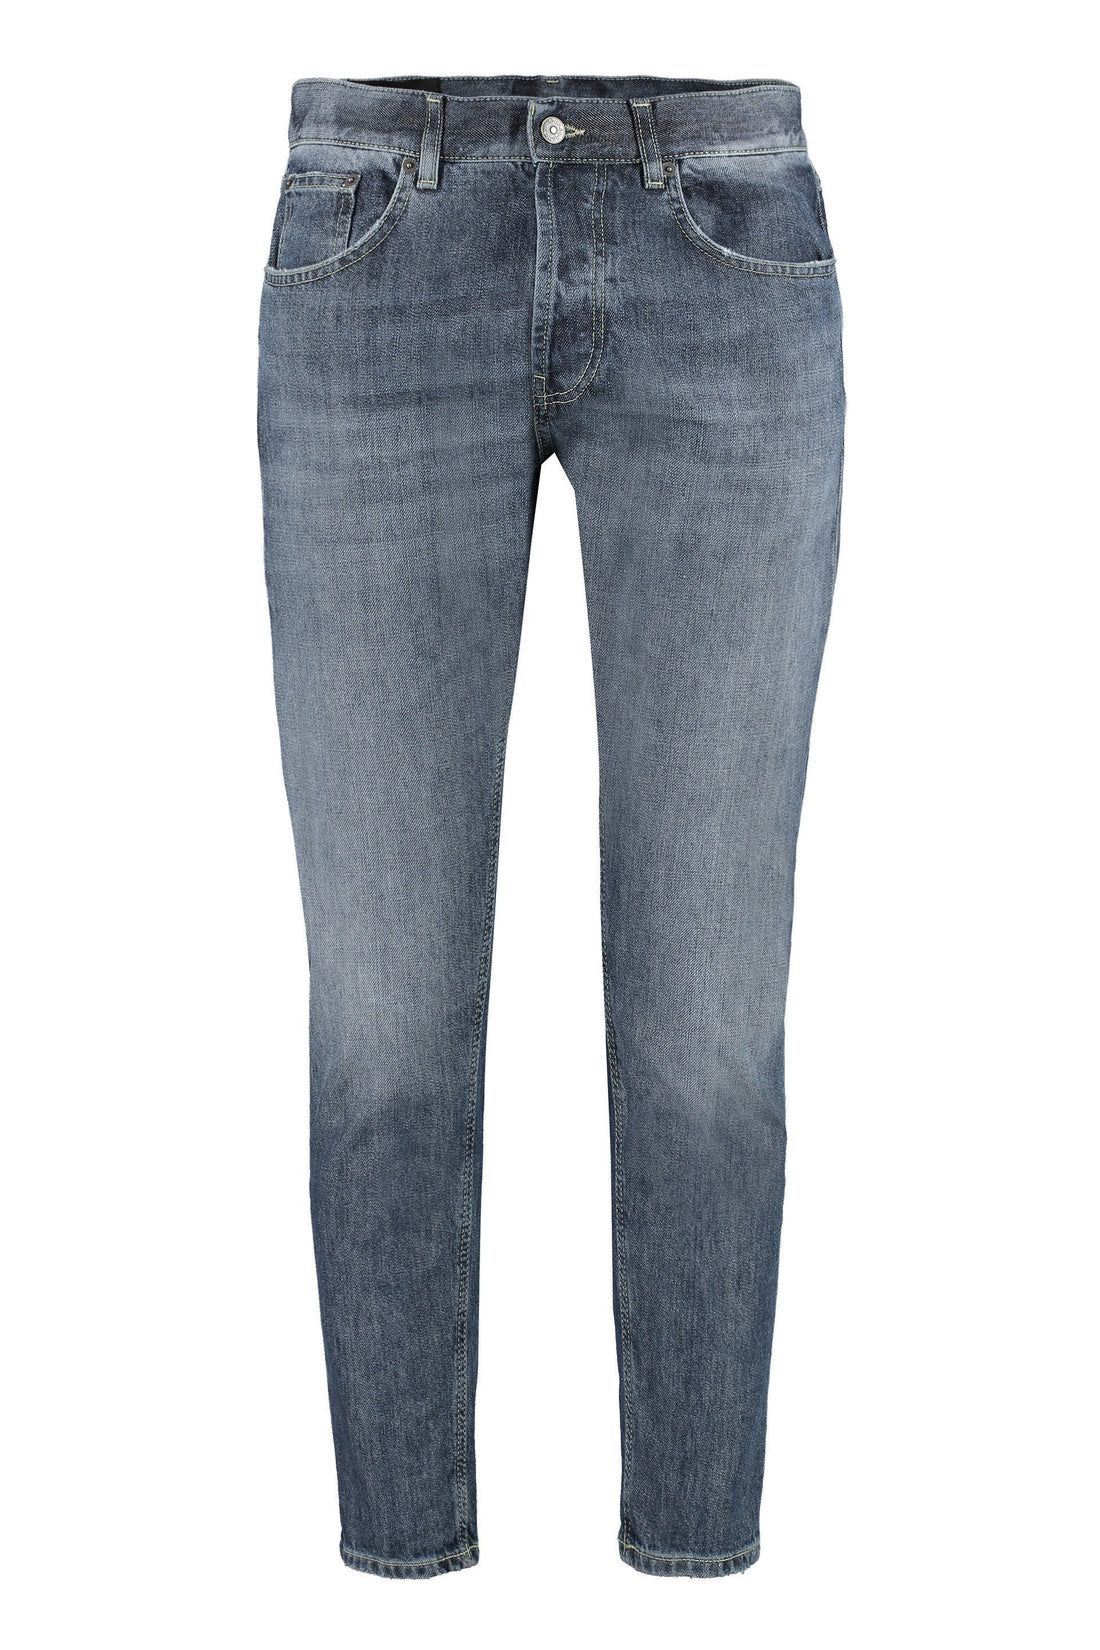 Dondup-OUTLET-SALE-Dian carrot-fit jeans-ARCHIVIST